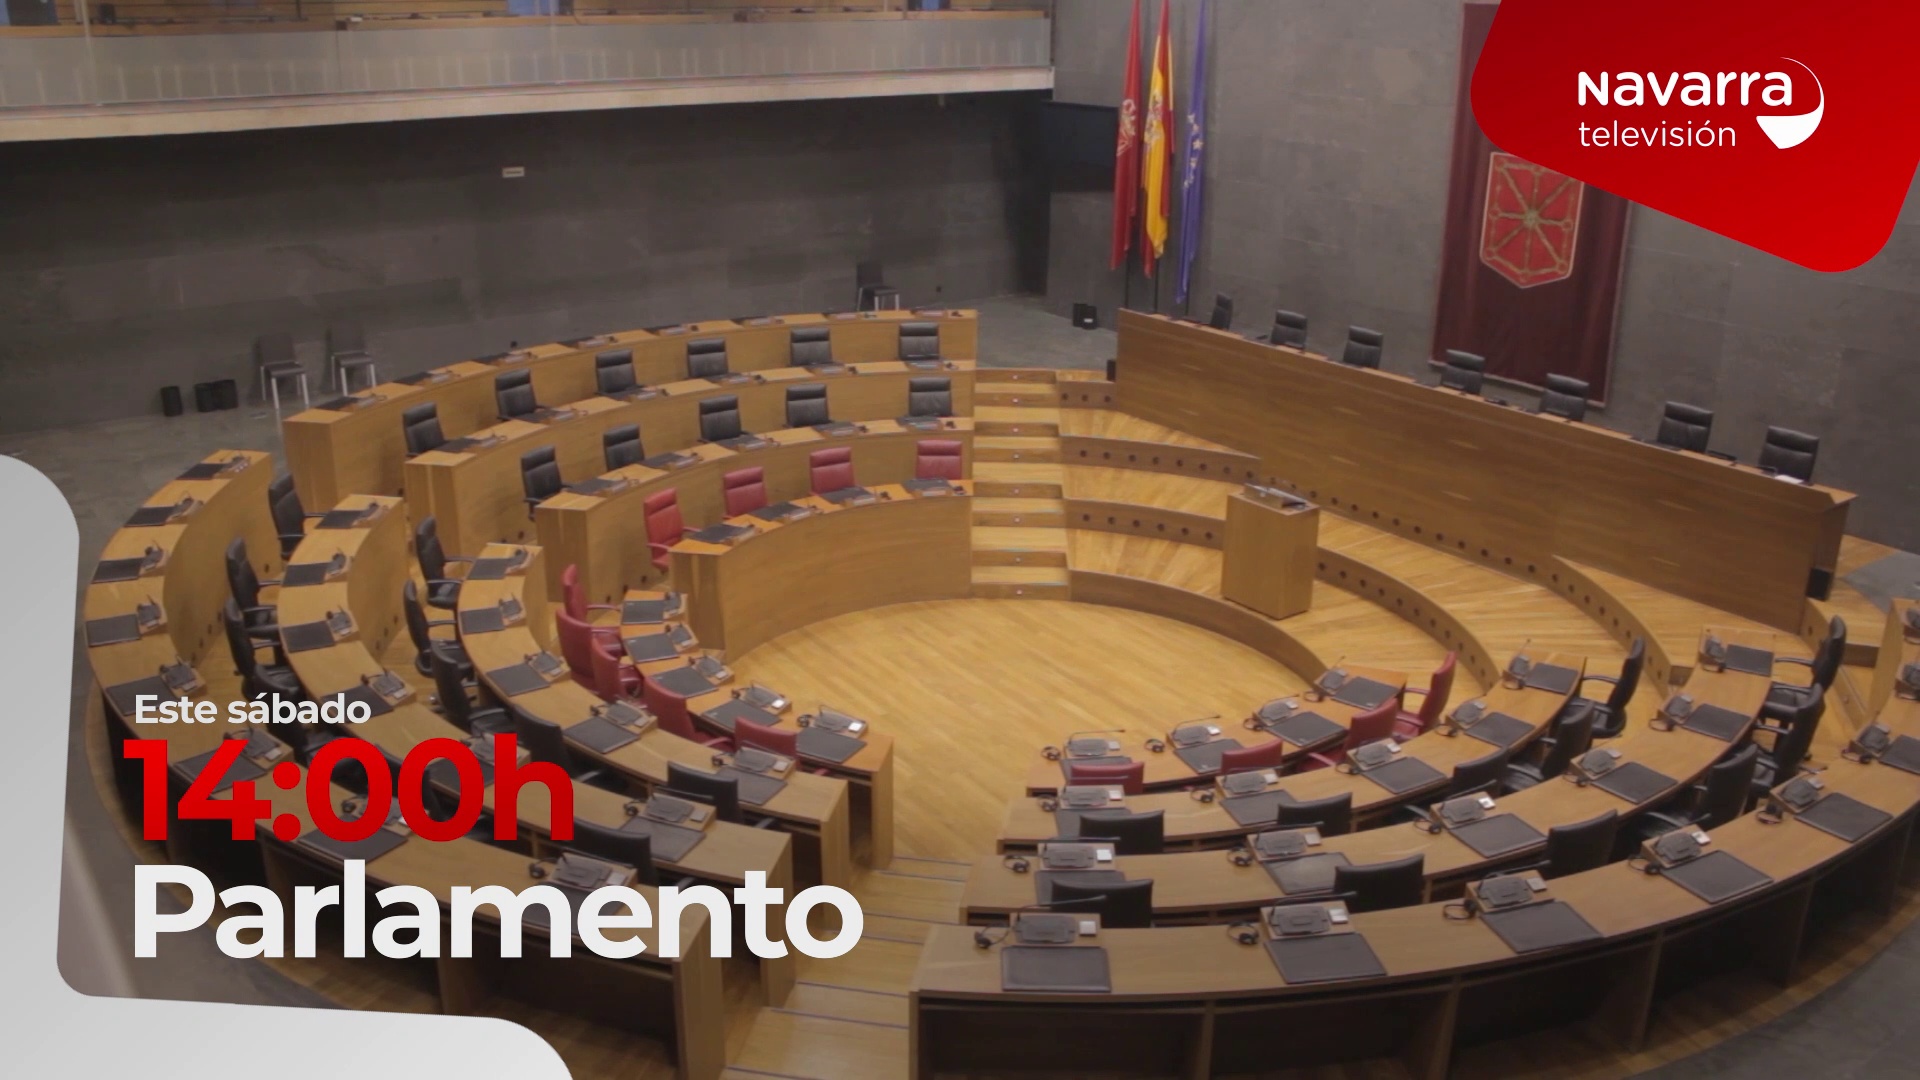 Programa El Parlamento, todos los sábados en Navarra Televisión, a las 14:00 horas